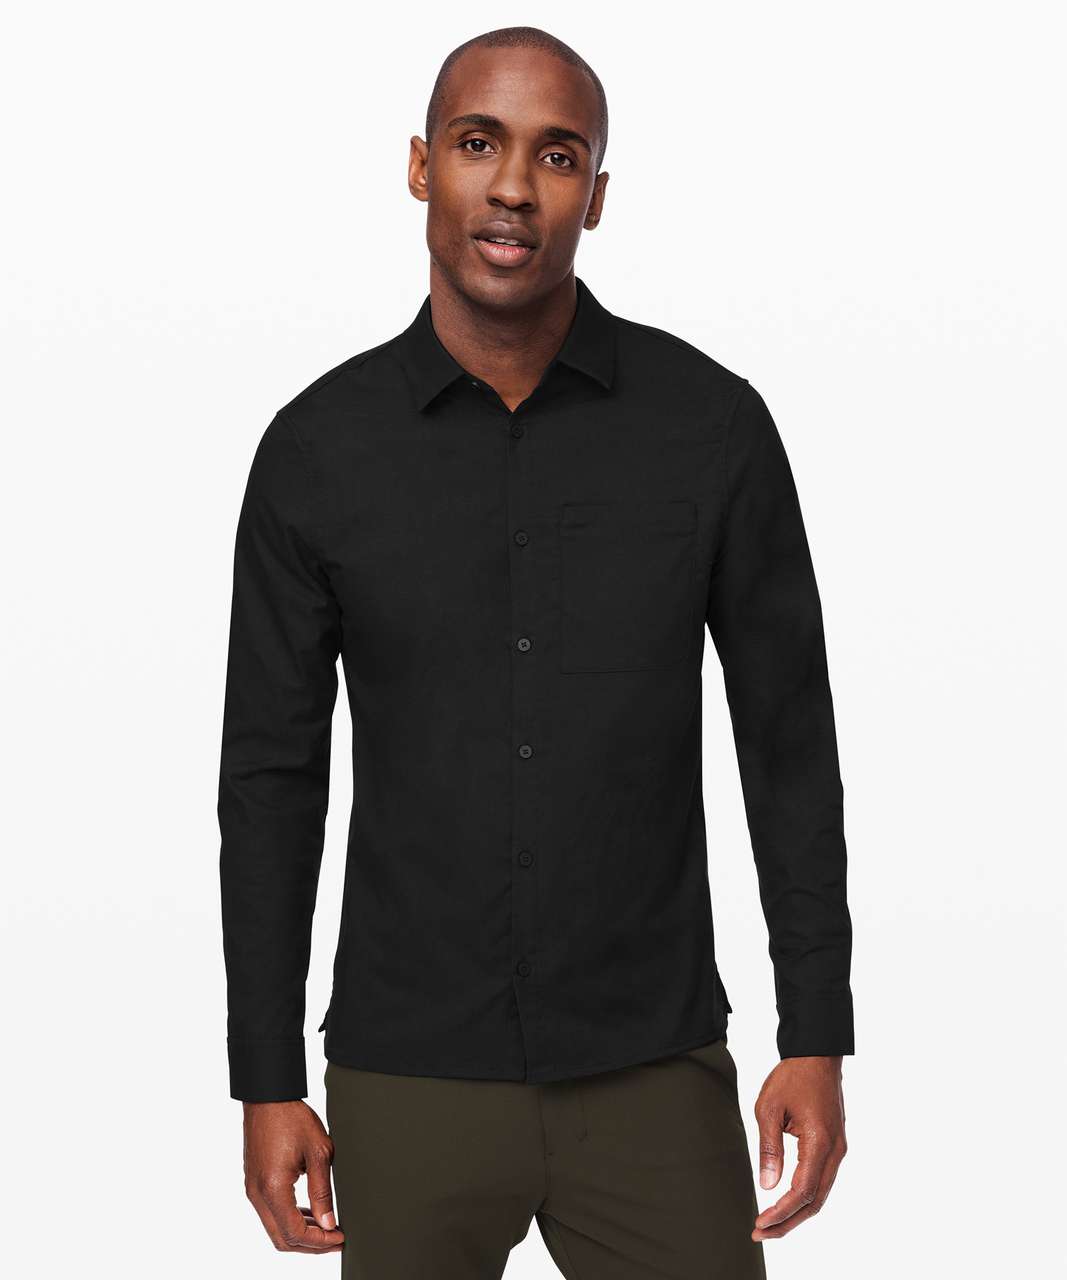 Lululemon Masons Peak Long Sleeve Shirt - Black